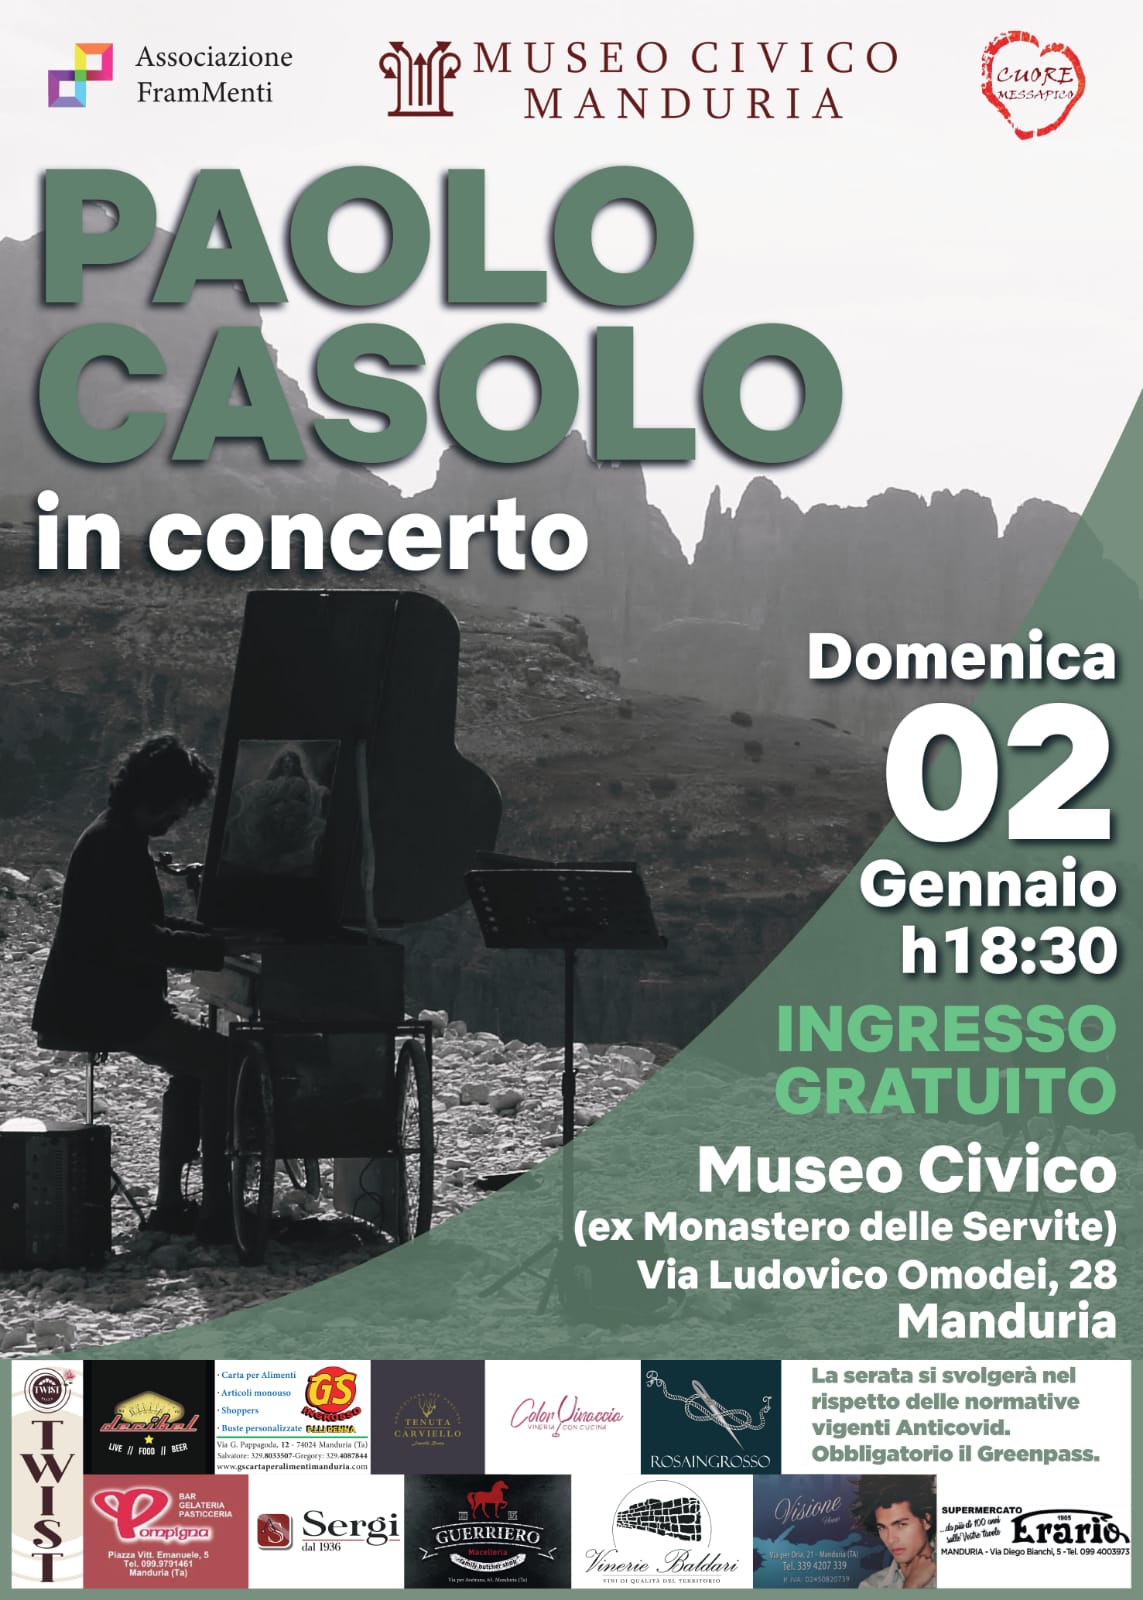 MANDURIA. Il Museo Civico ospita “Paolo Casolo in concerto”